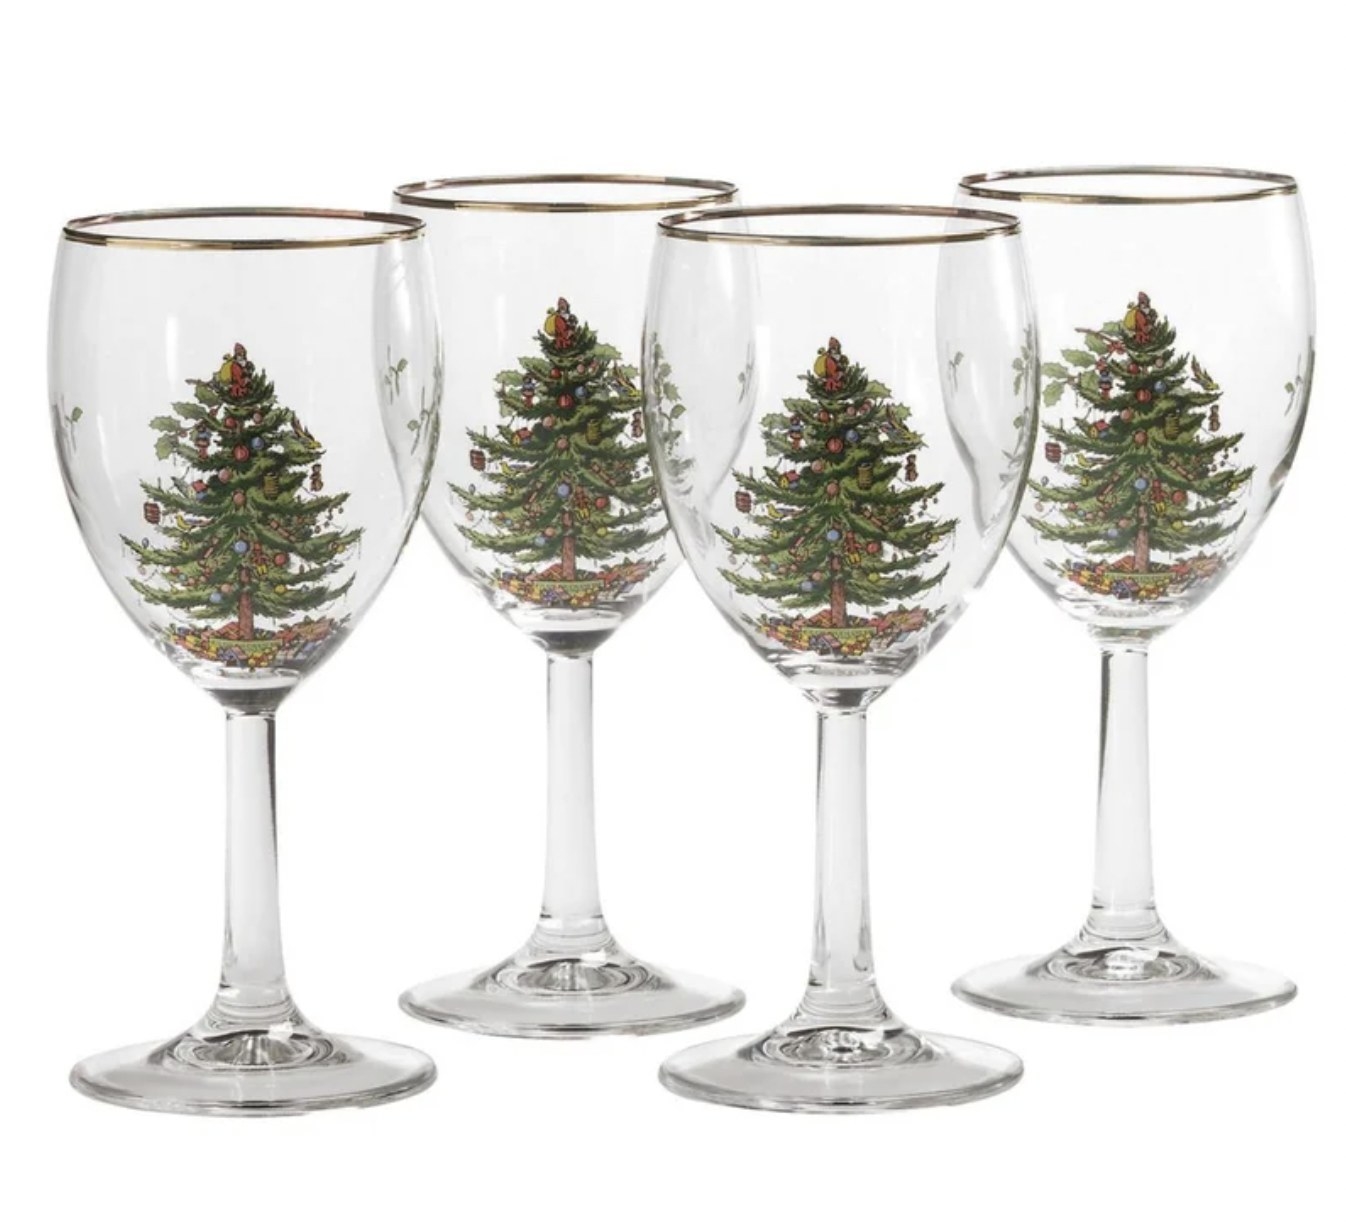 Christmas tree wine glasses